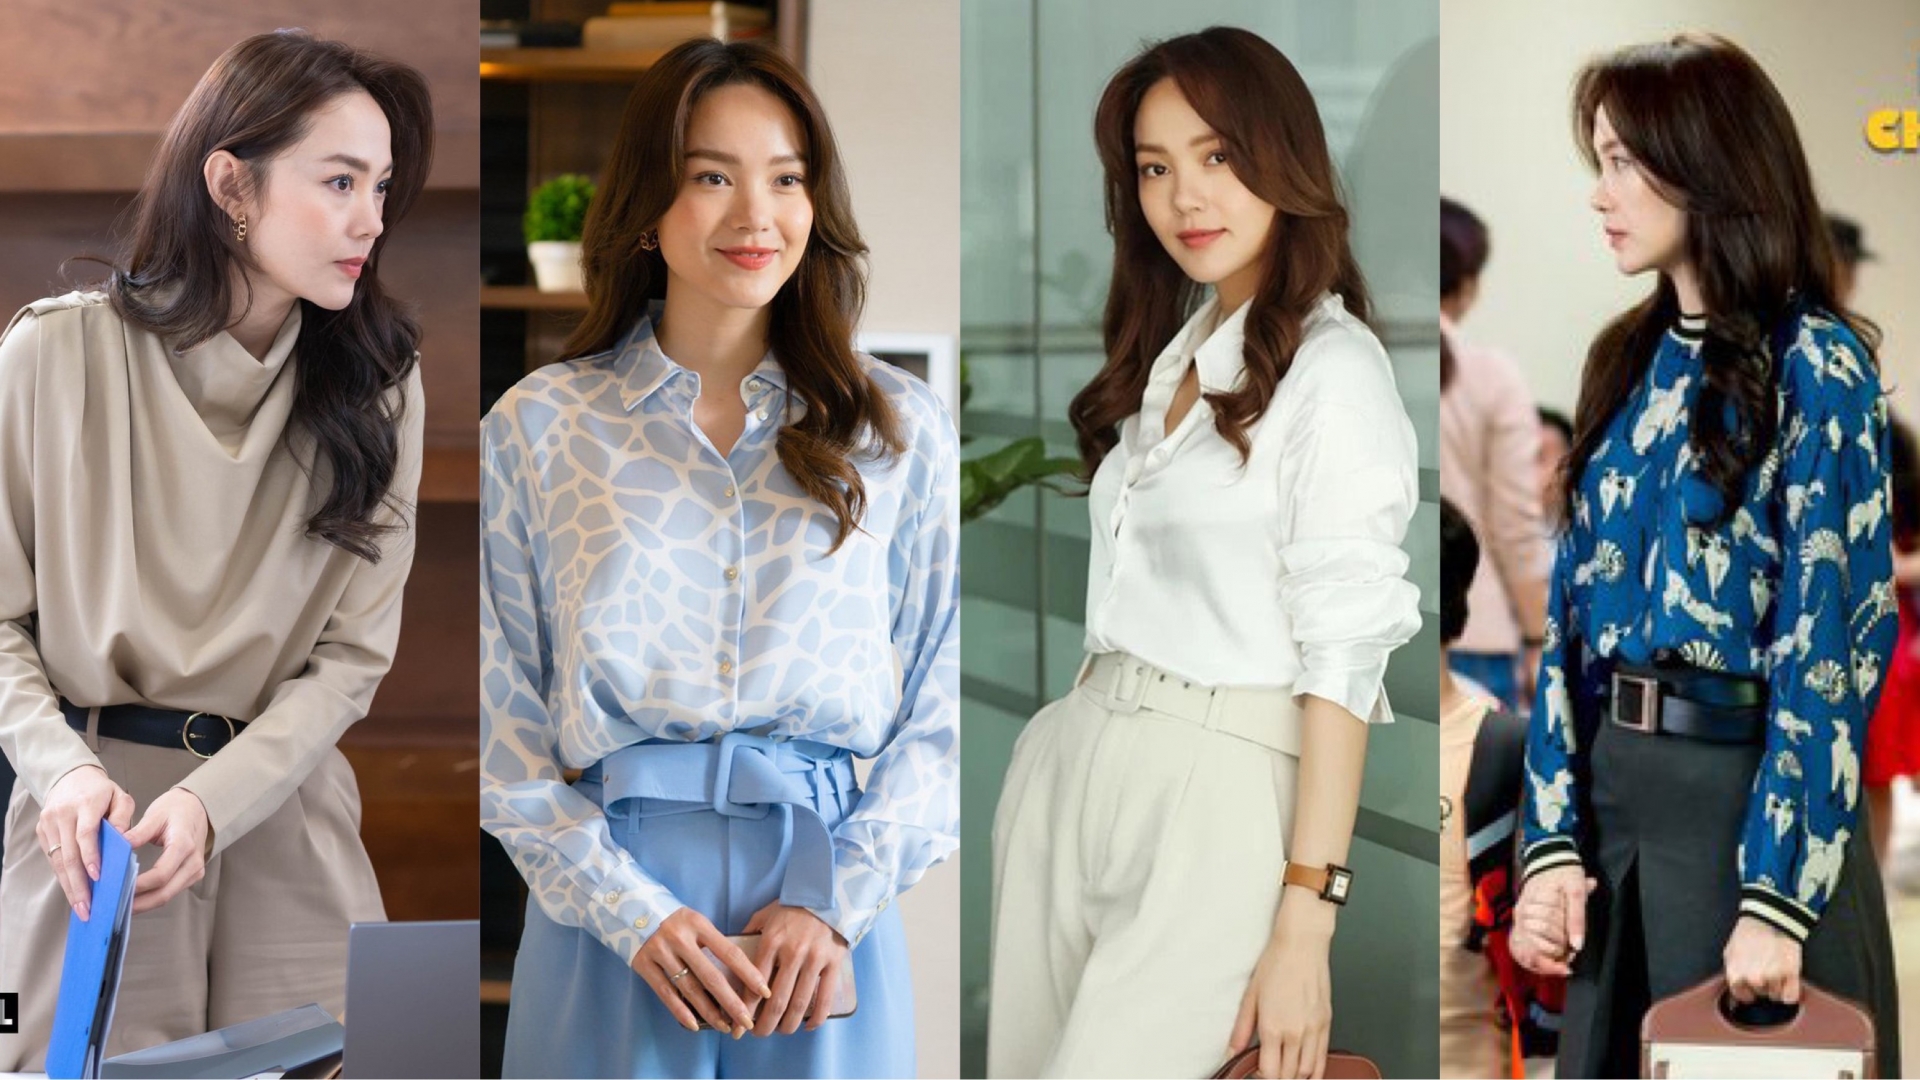 Gu thời trang của Minh Hằng trong phim mới khiến hội chị em công sở 'phát sốt' vì trông sang chảnh và trẻ trung chẳng kém gì các mỹ nhân phim Hàn.